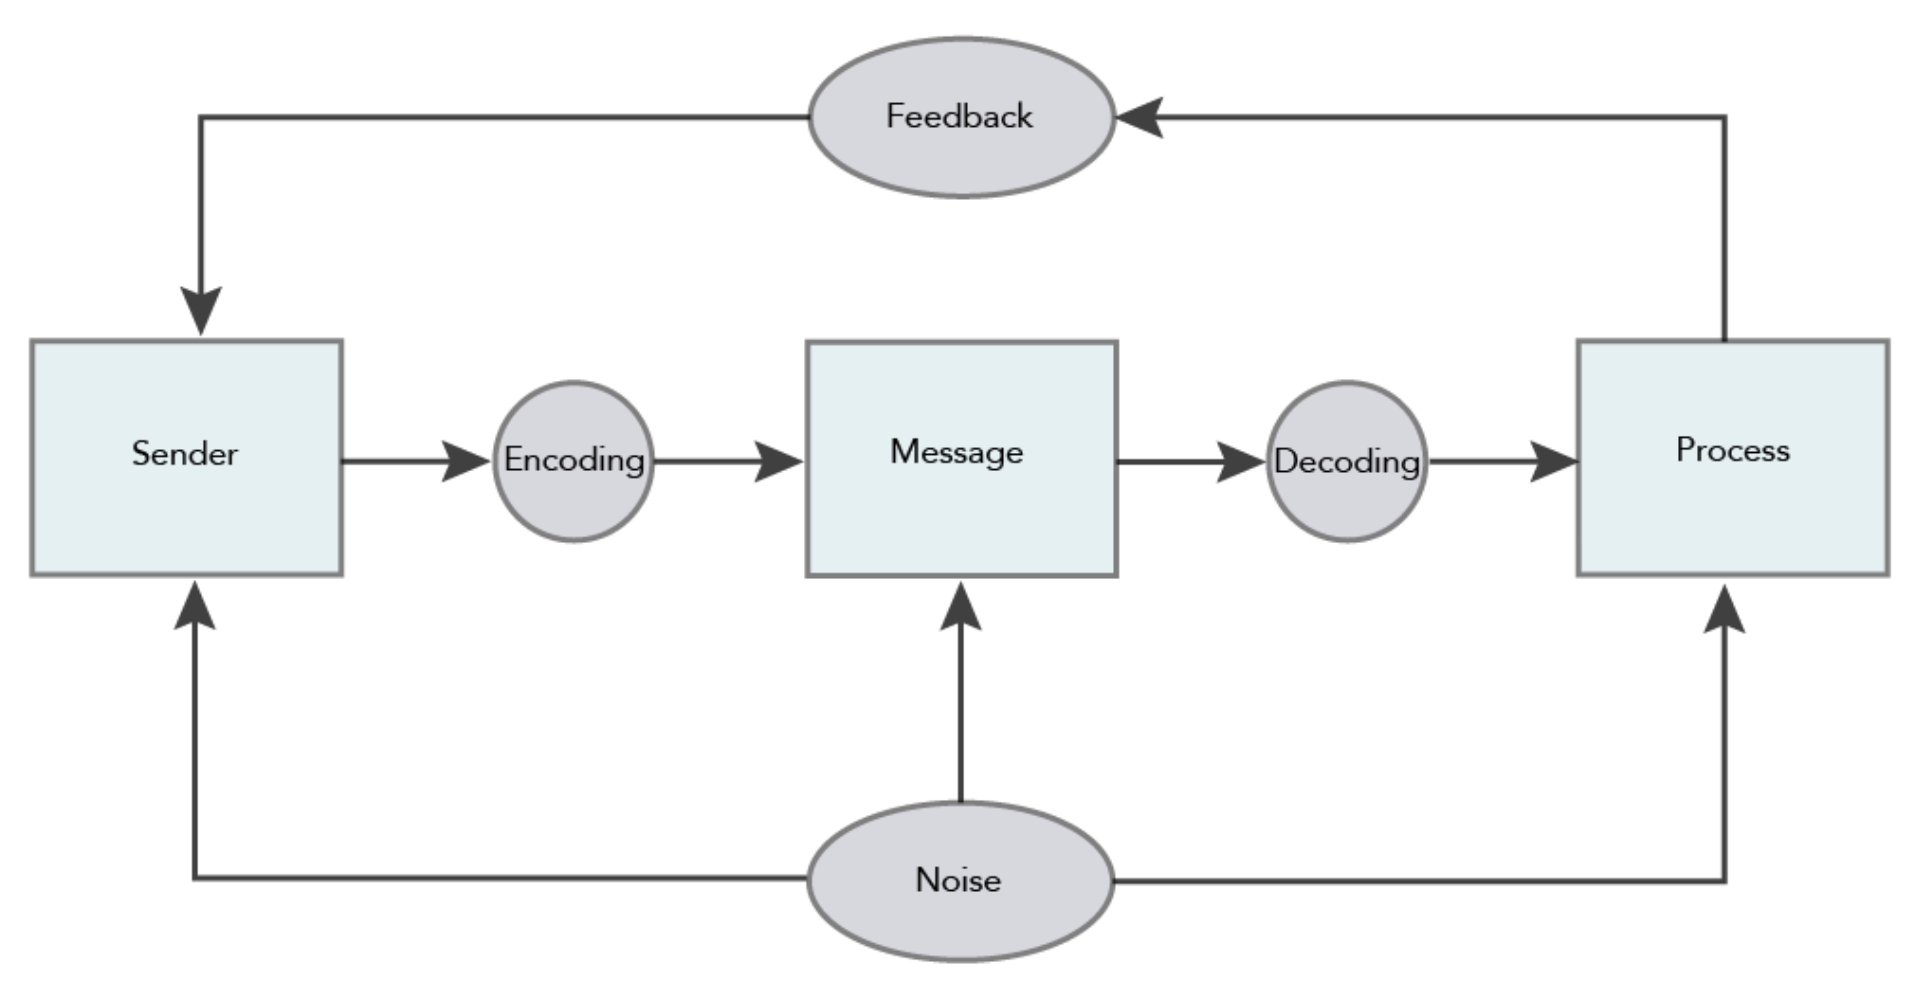 Un diagrama de flujo del modelo de comunicación social, esta vez con “retroalimentación” que fluye desde el paso de “proceso” hasta el paso de “remitente”.